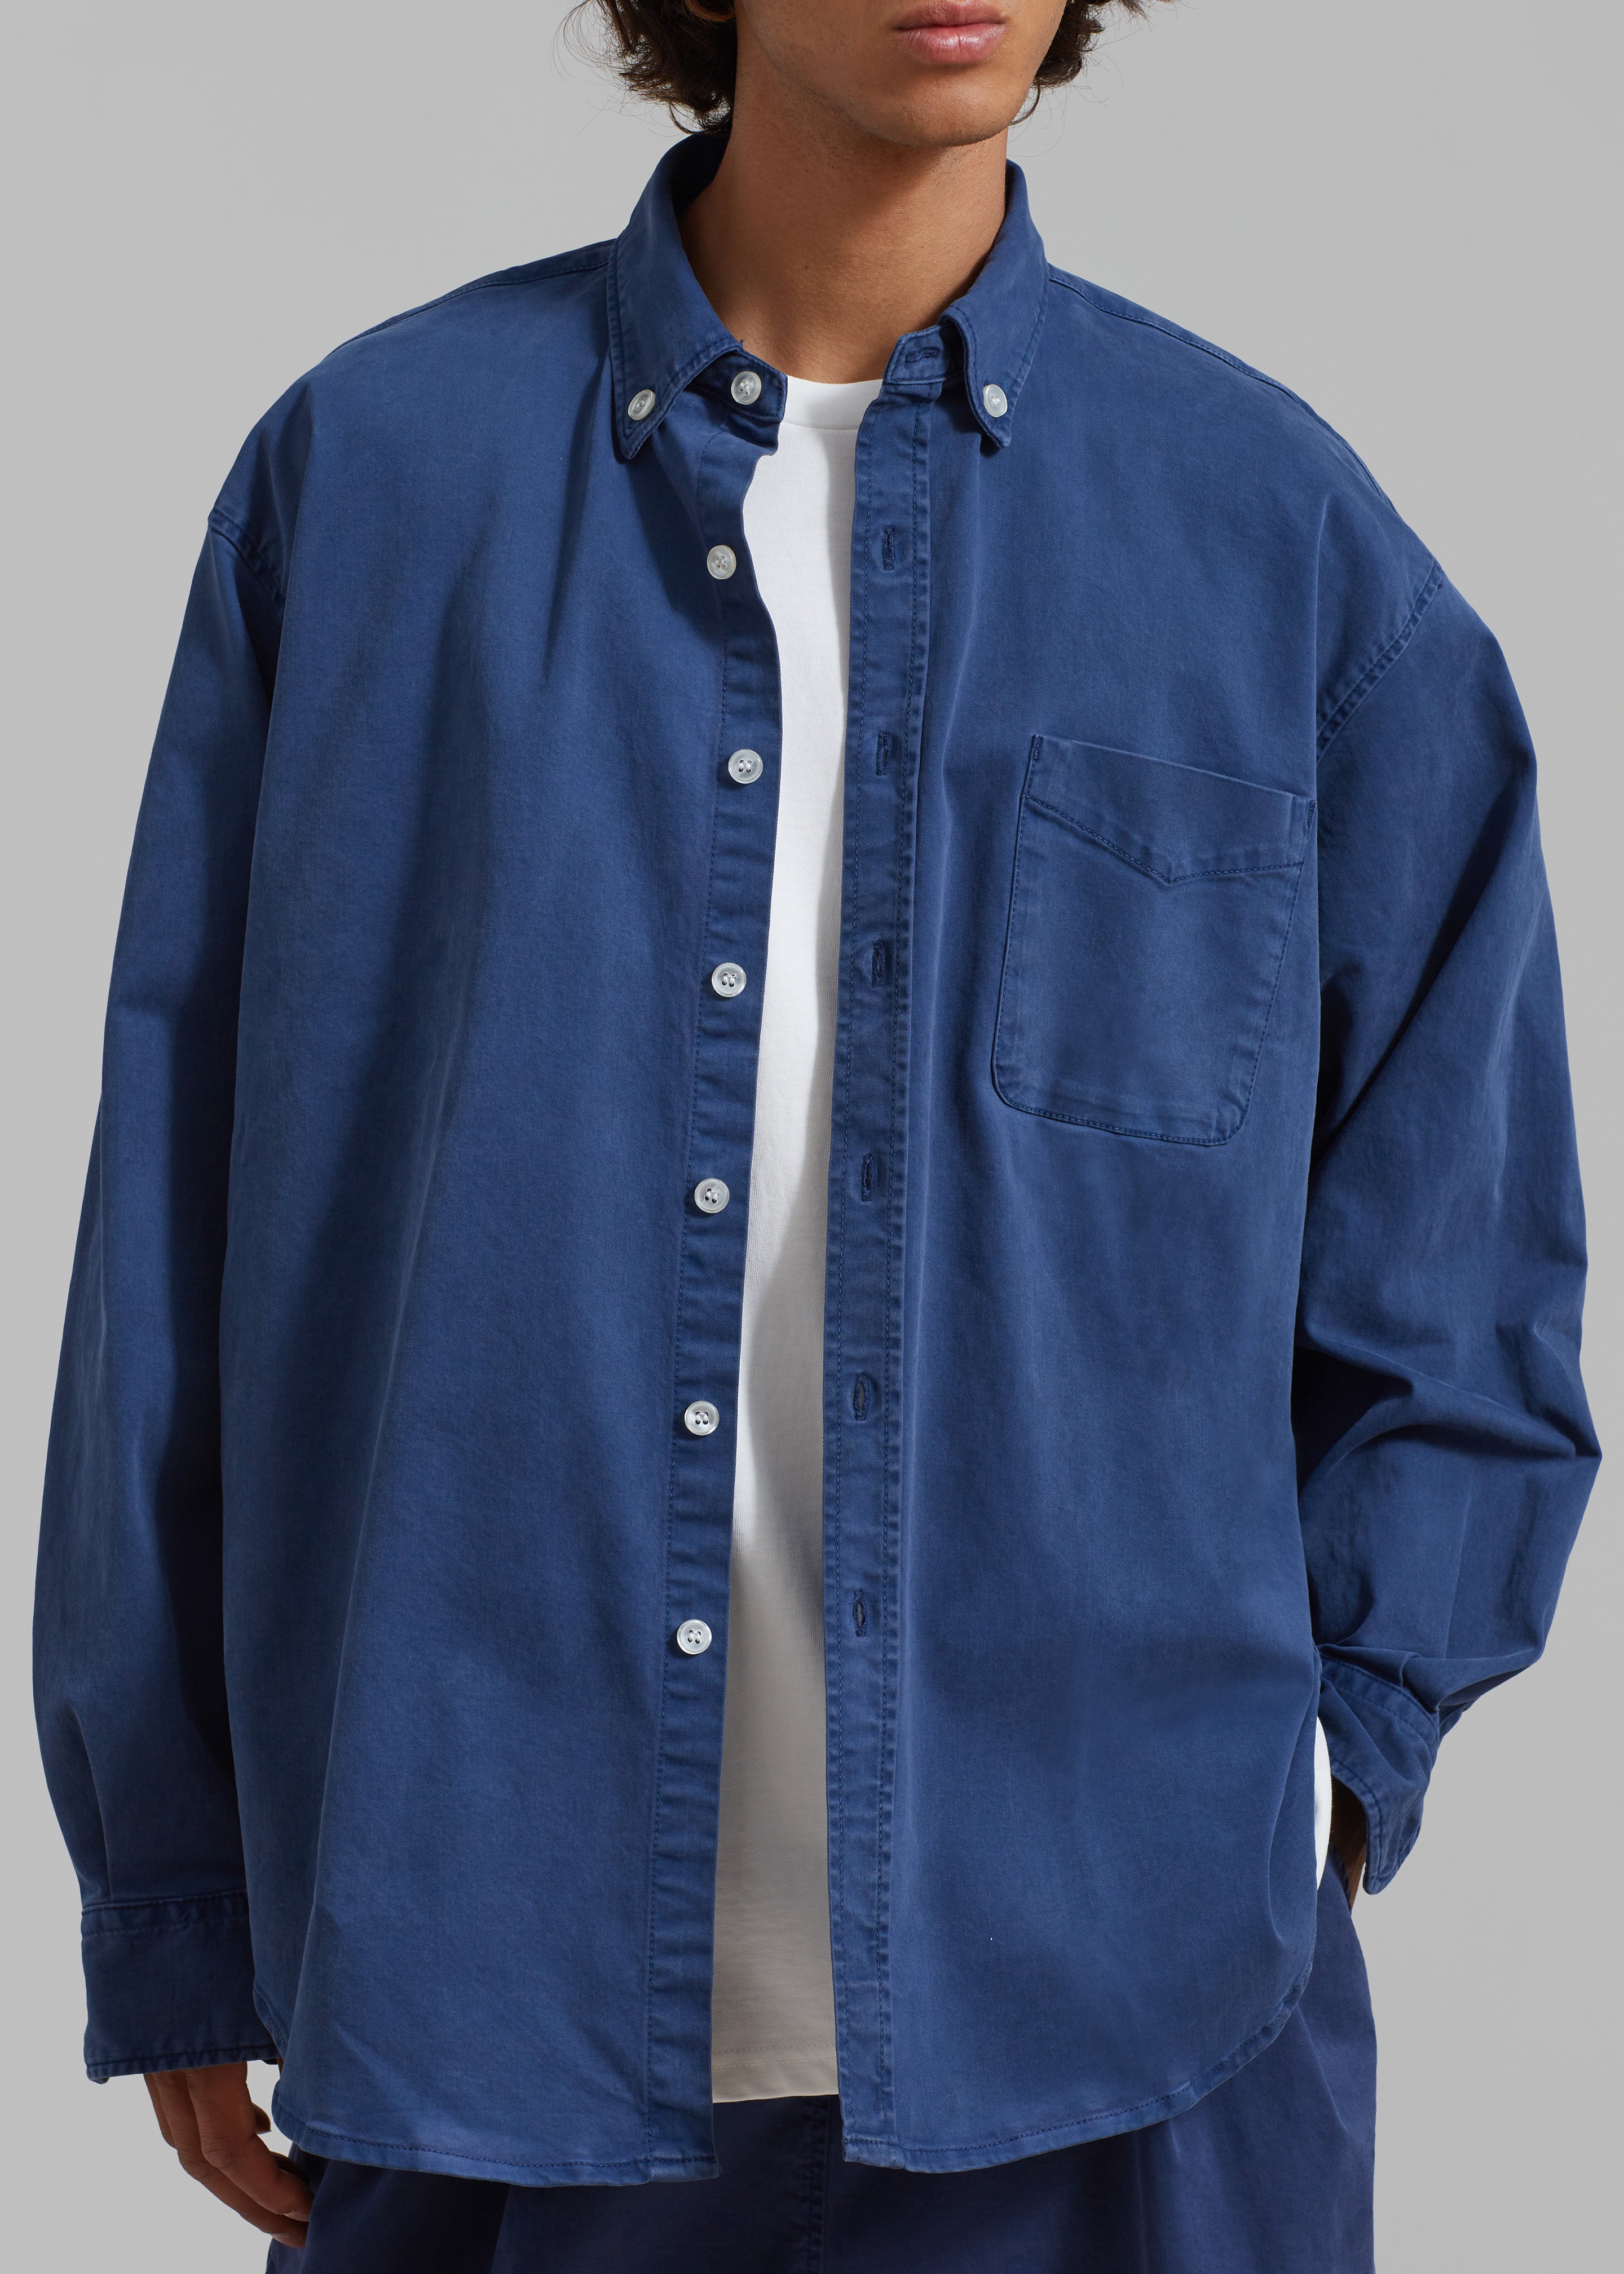 Sinclair Shirt - Blue - 3